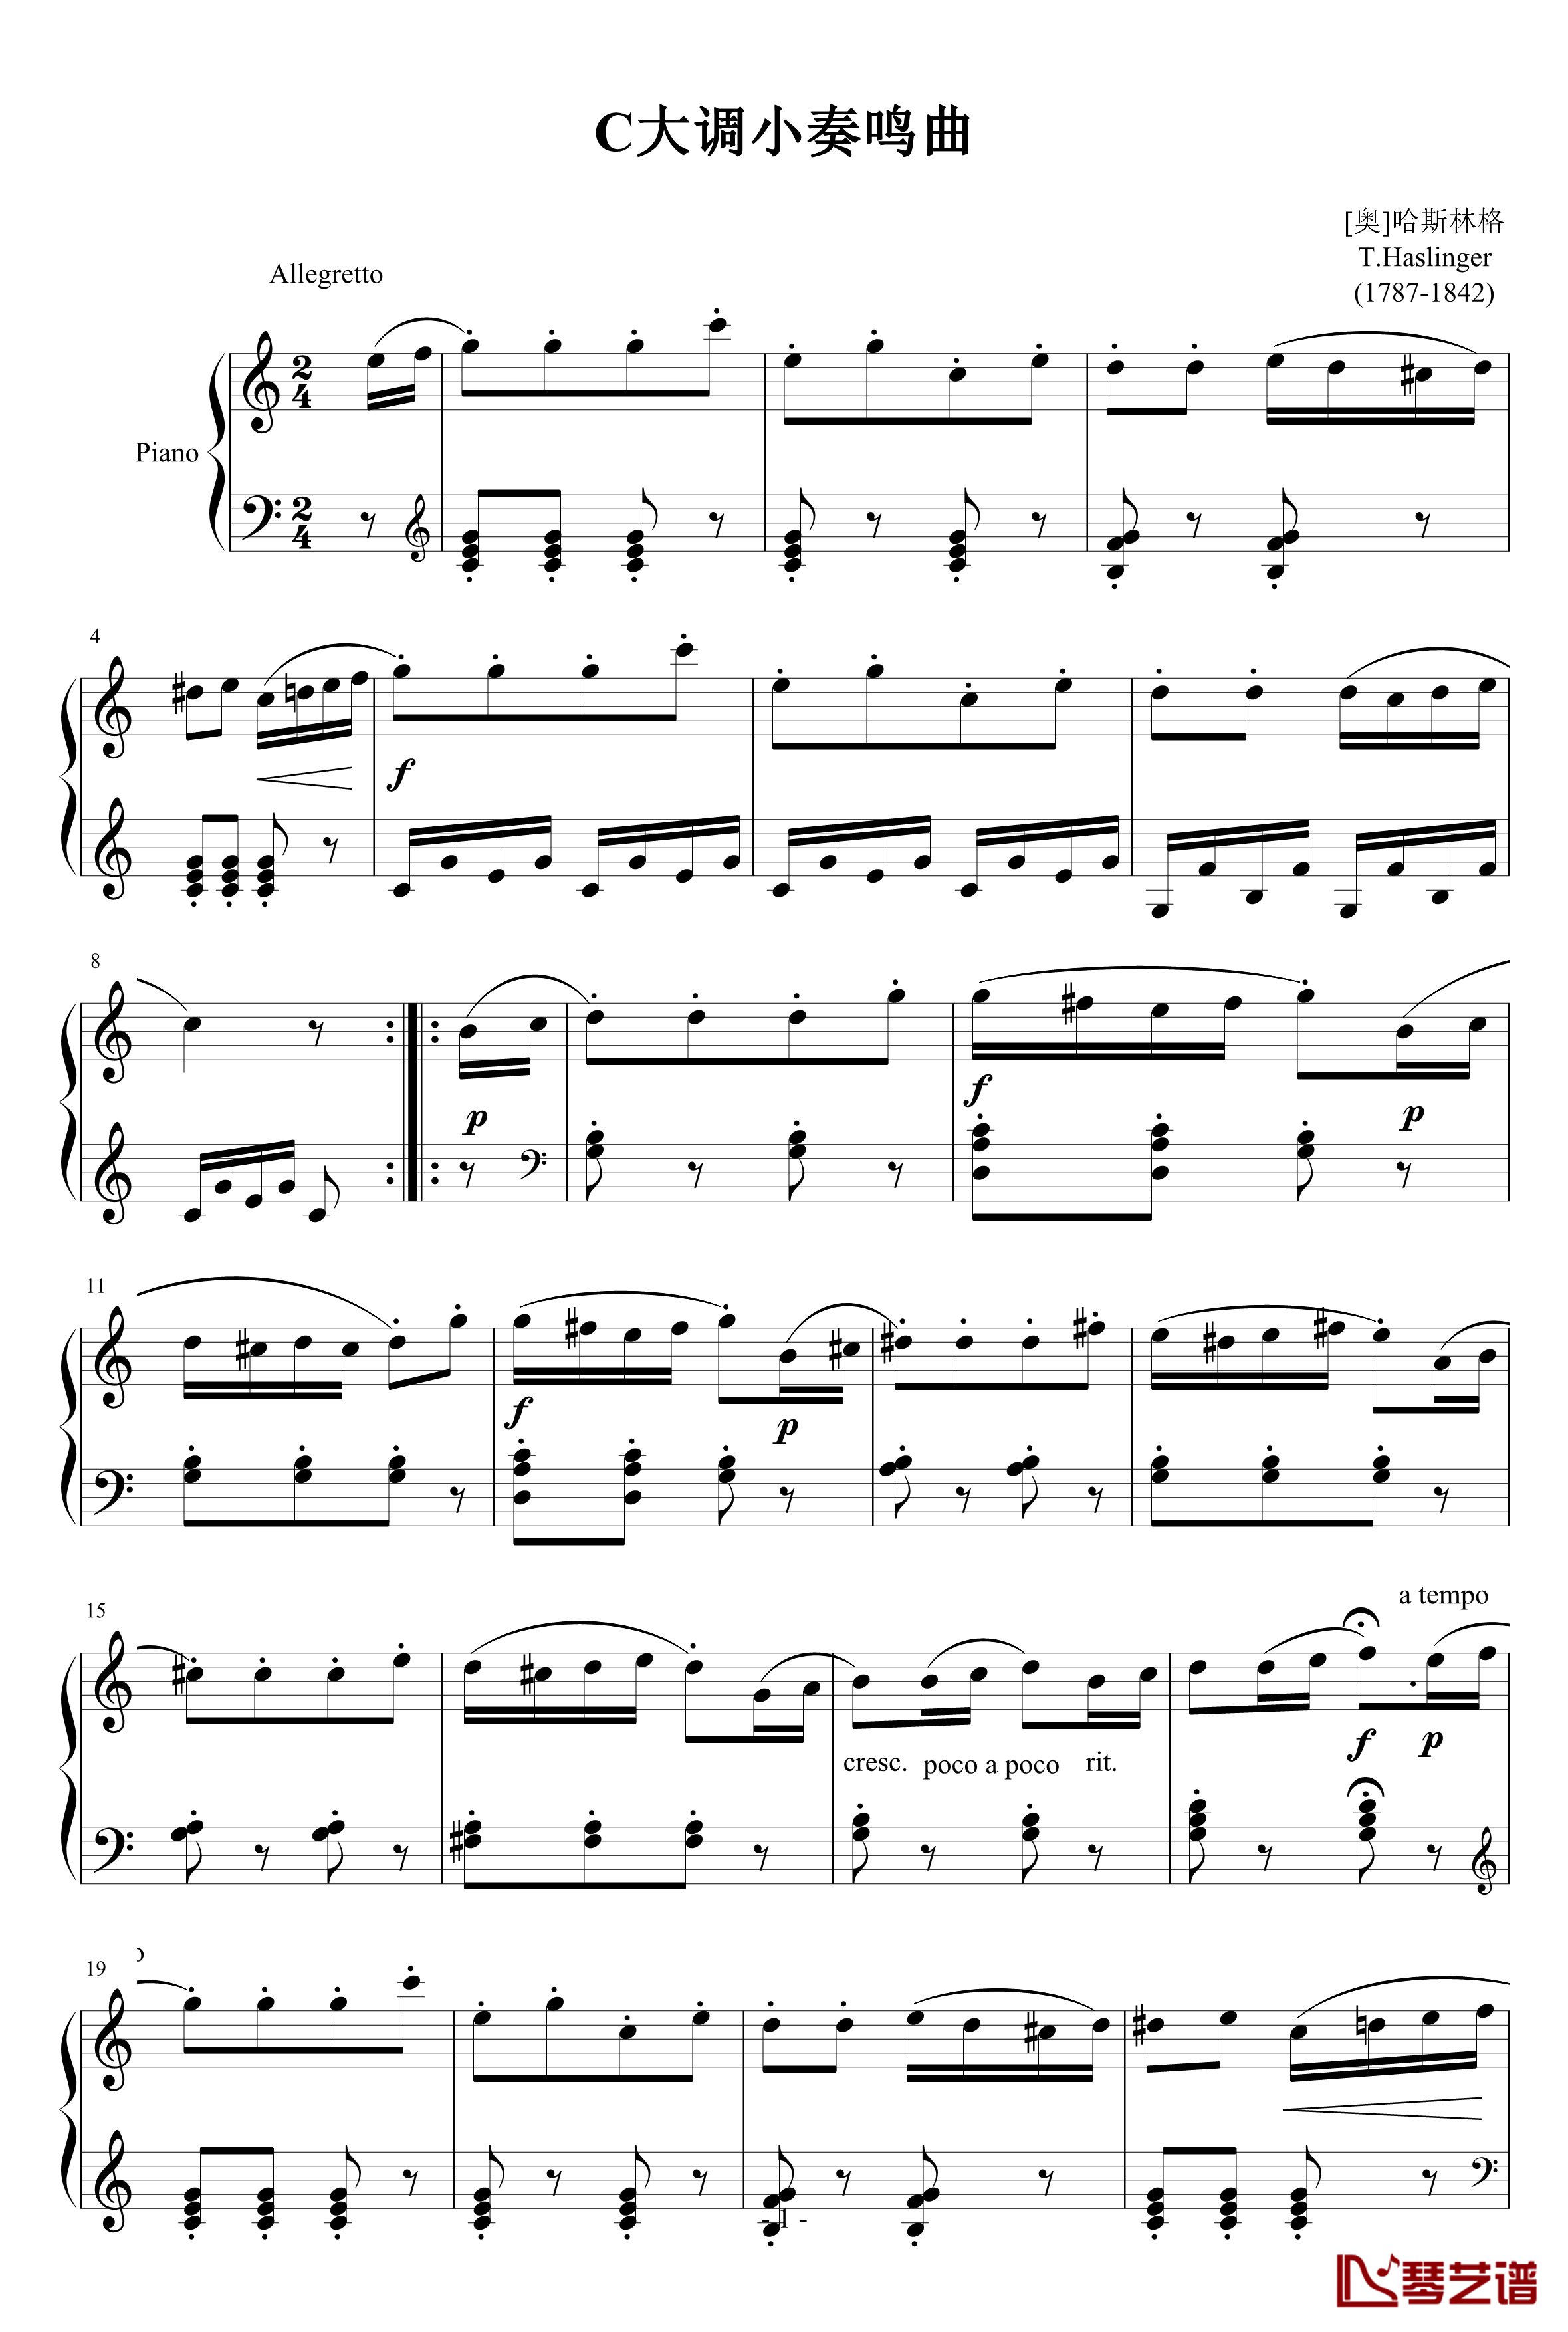 C大调小奏鸣曲钢琴谱-哈斯林格1